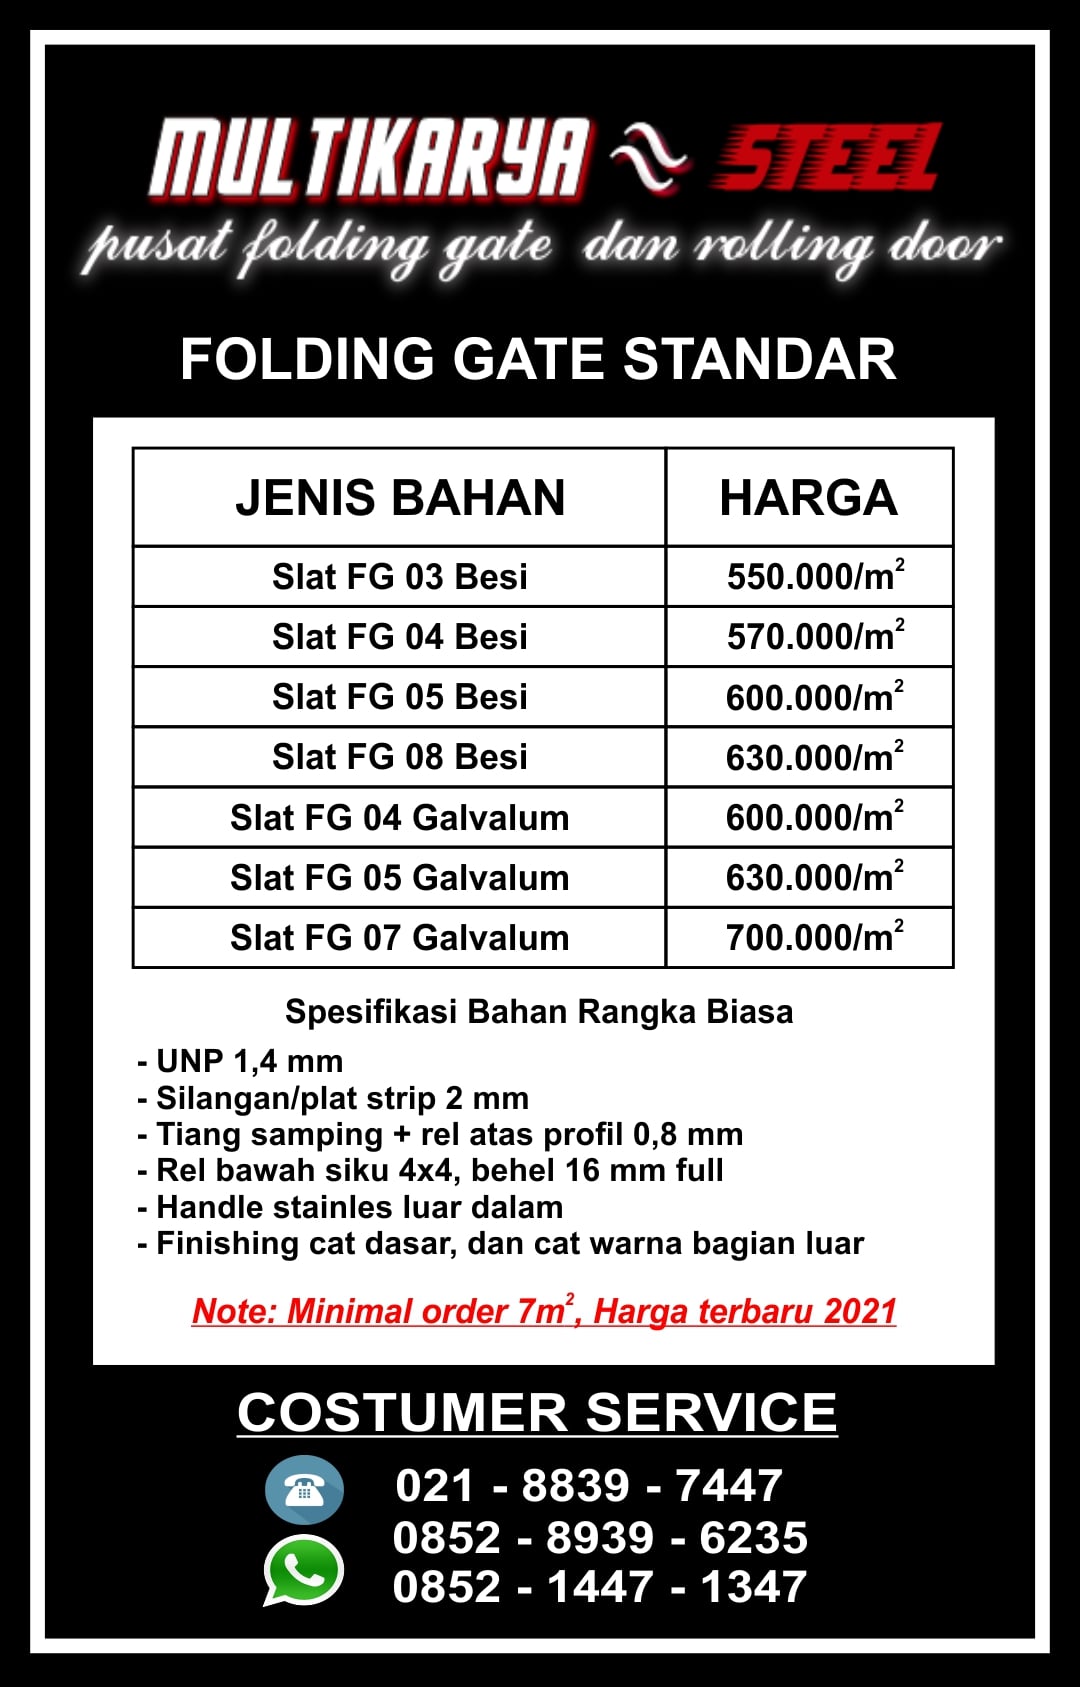 Daftar Harga Folding Gate Pondok Melati Murah Multi Karya Steel